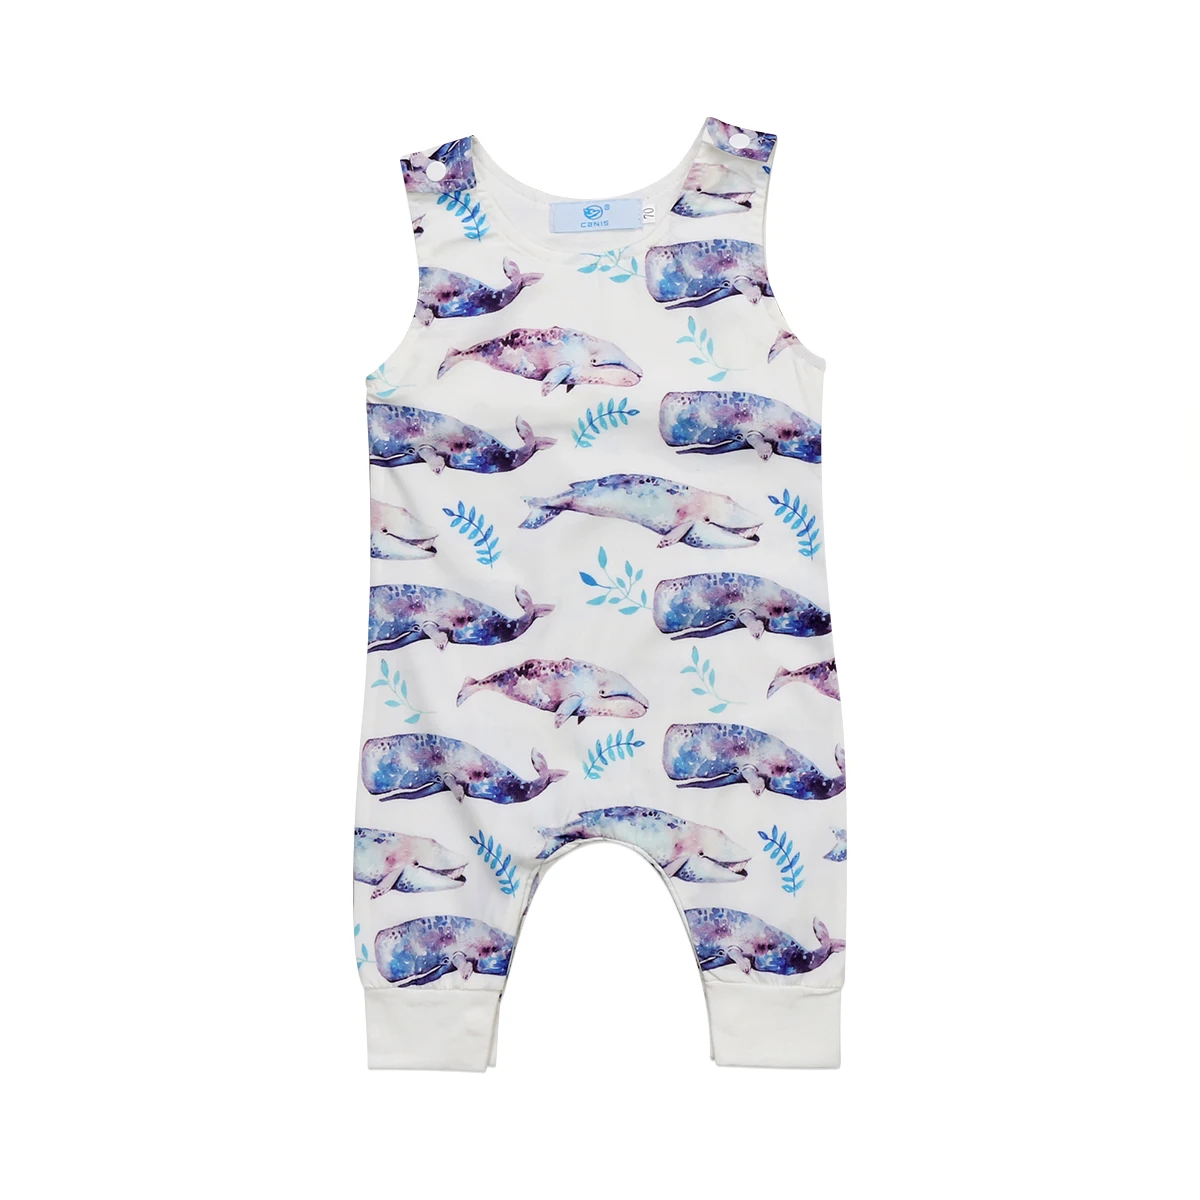 Милый Летний комбинезон для новорожденных для маленьких мальчиков Обувь для девочек с принтом акулы ползунки младенческой детские